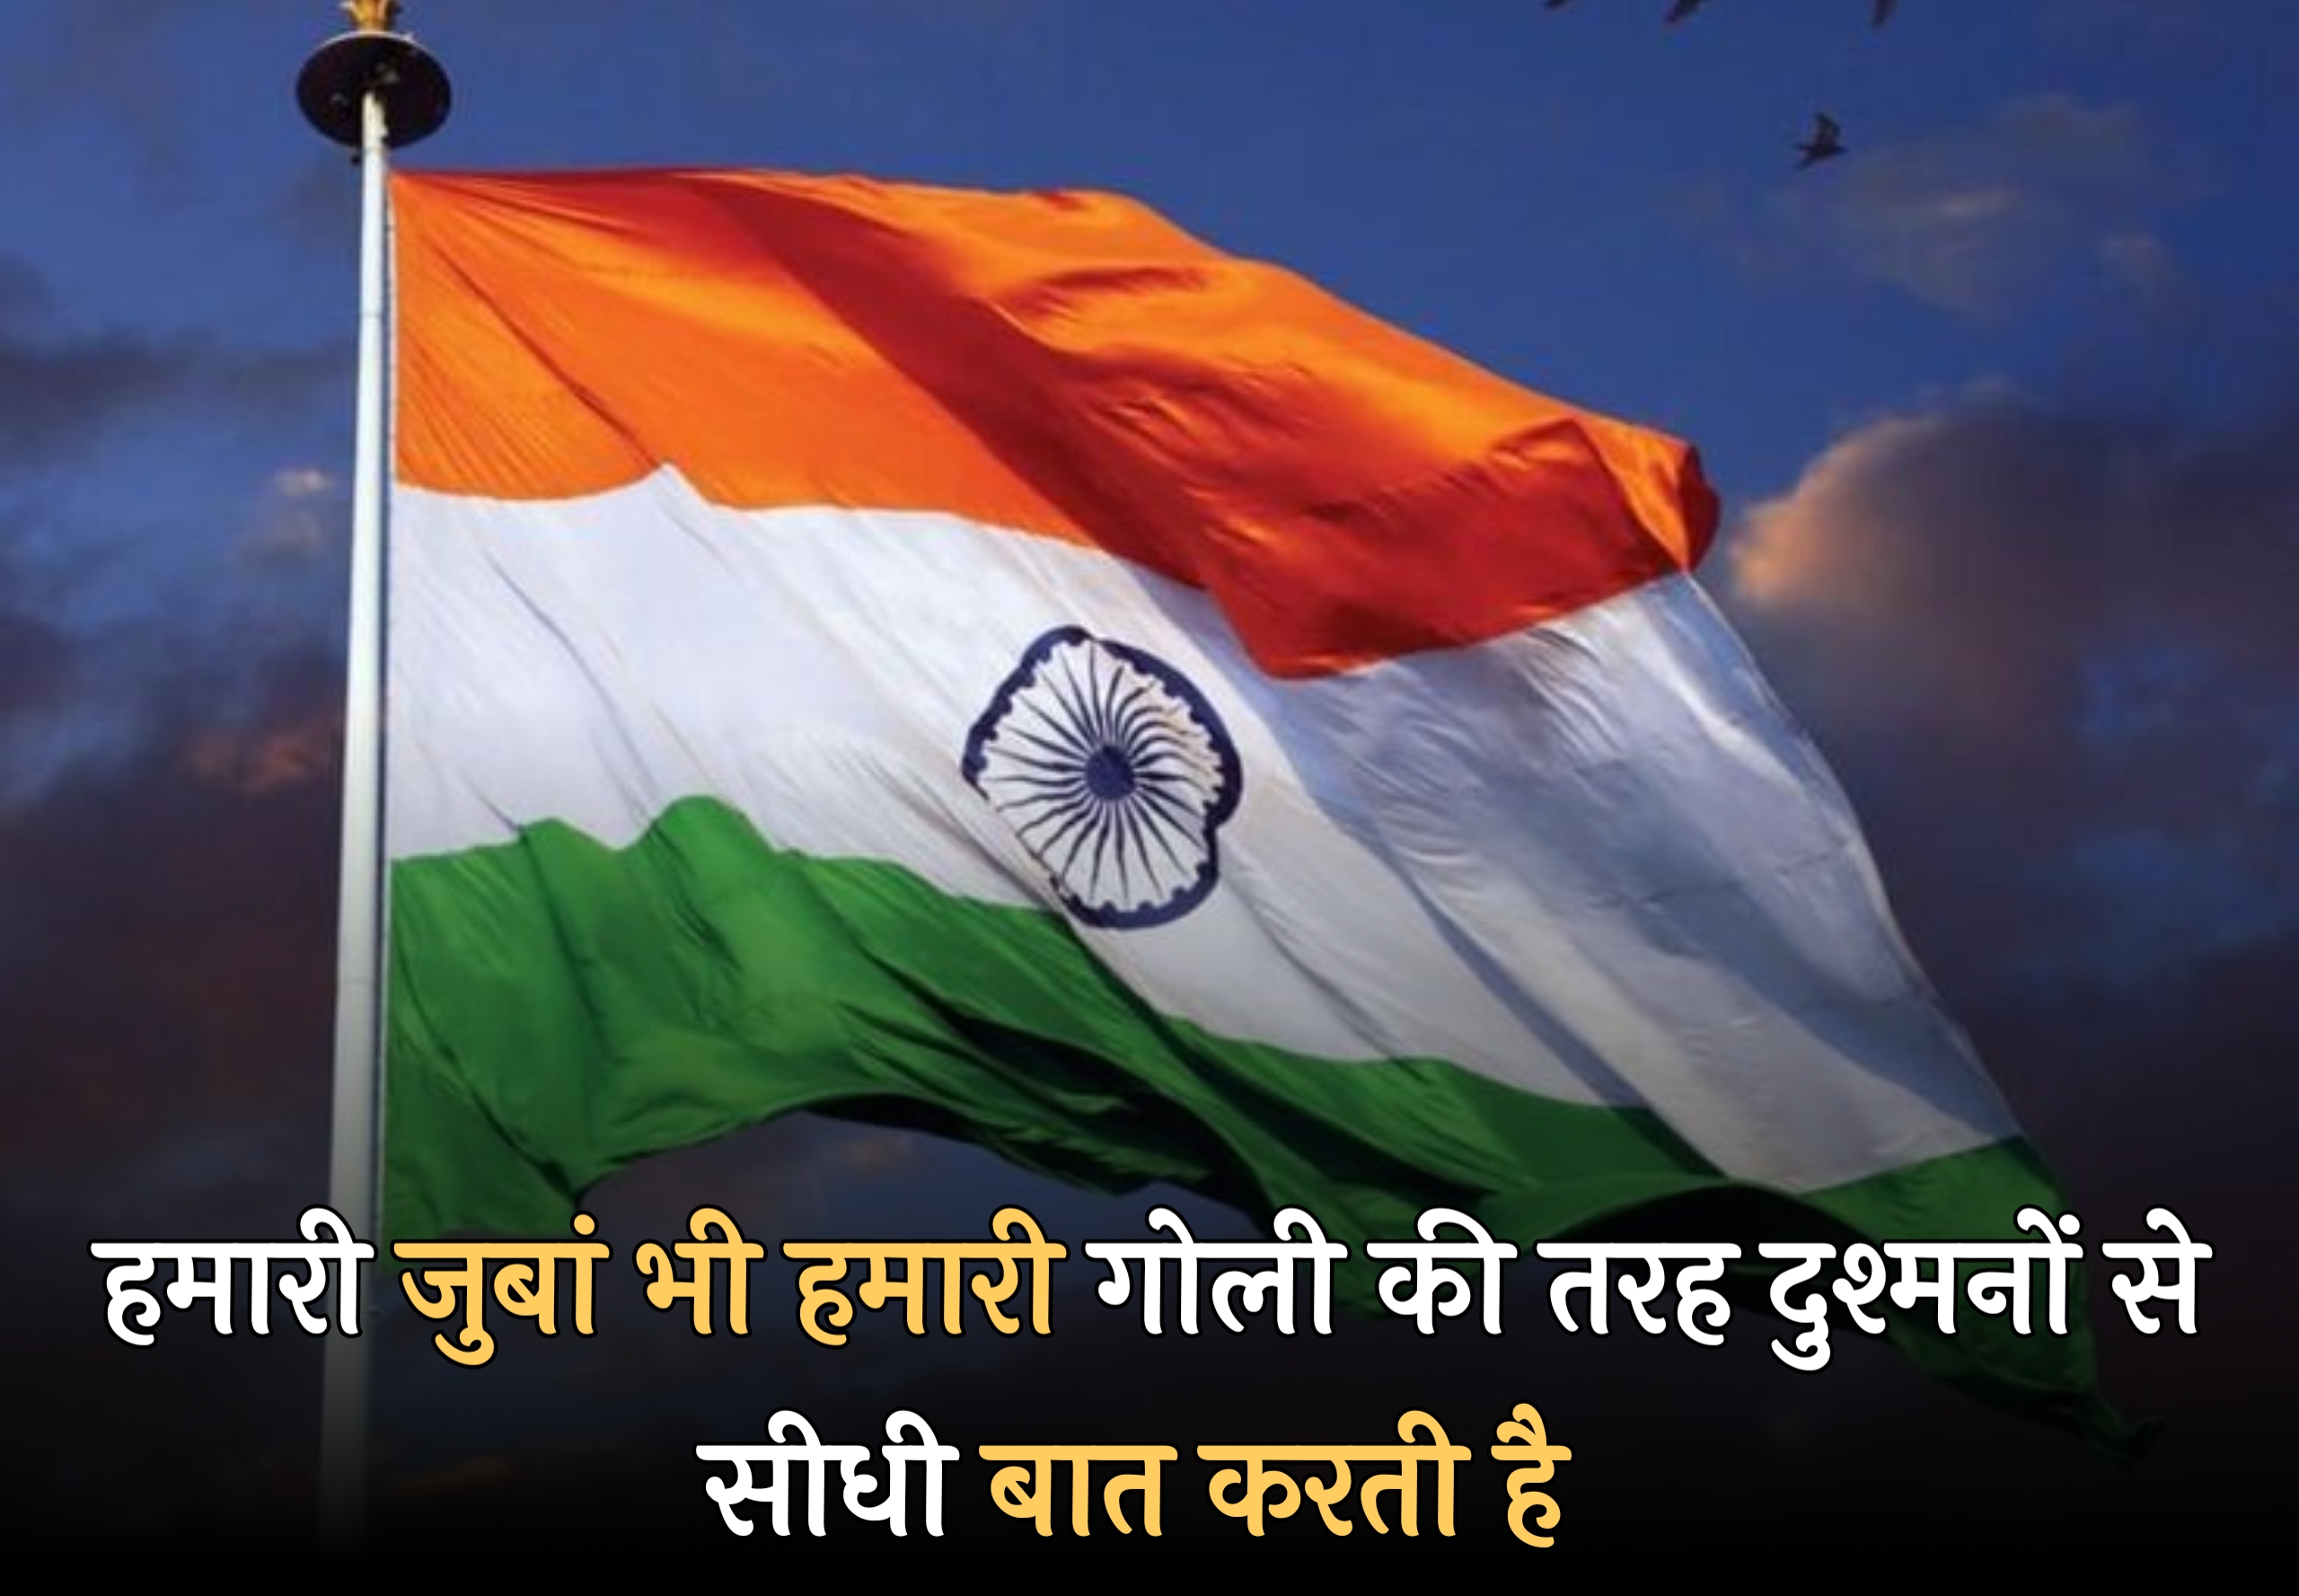 15 अगस्त पर शायरी 2023 | स्वतंत्रता दिवस पर शायरी 2023 | Happy Independence day shayari in Hindi 2023,independence day shayari status quotes wishes in hindi 2023,15 अगस्त की शुभकामनाएं भेजें 2023,15 August shayari in hindi 2023